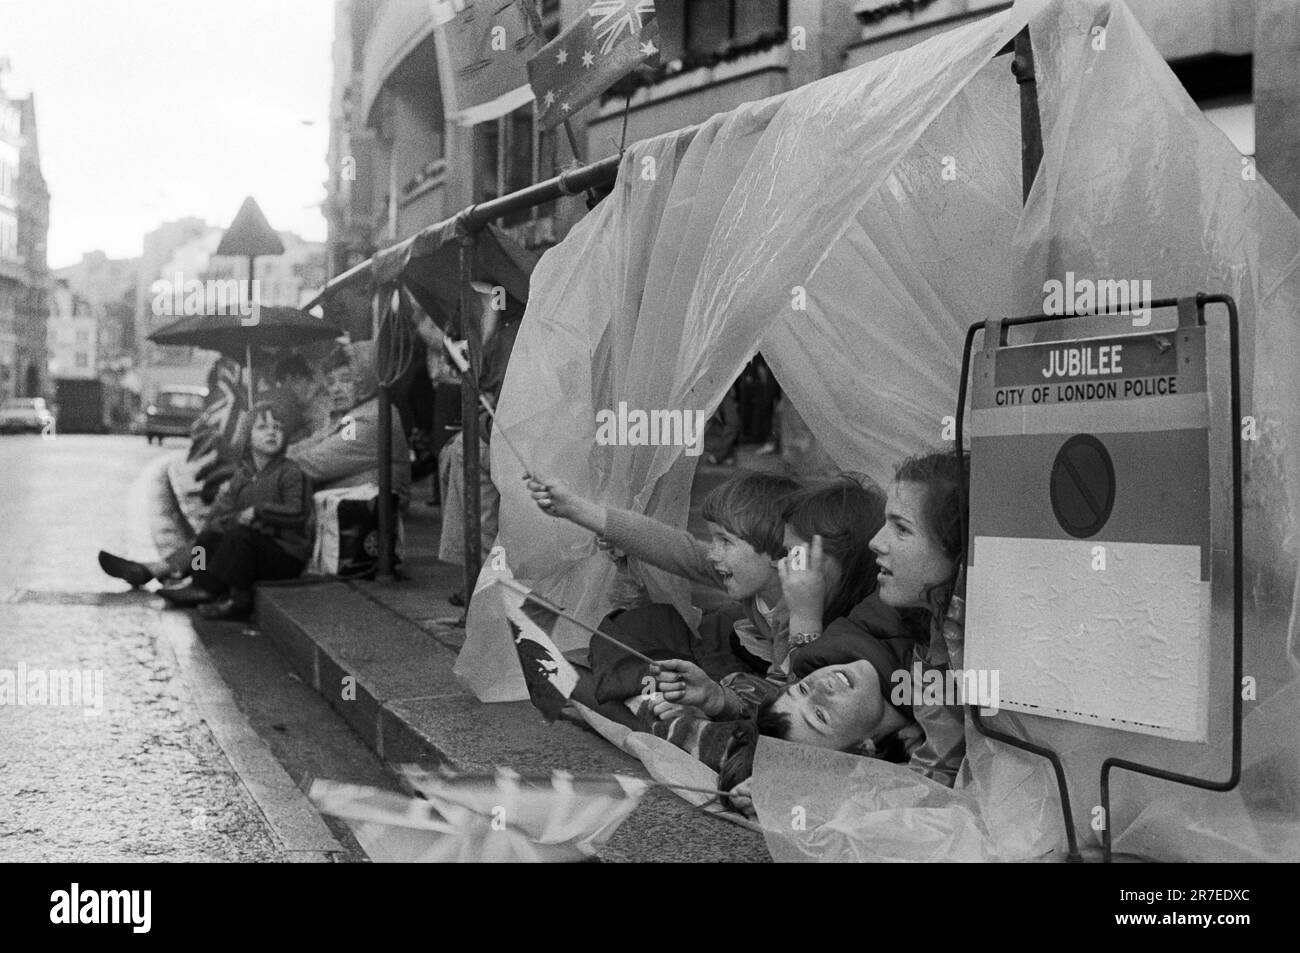 Queen Elizabeth II. Silberjubiläum 1977. Die Wunschfreunde warten die ganze Nacht und gießen oft Regenschutz unter Sonnenschirmen und Plastikdecken für die Silver Jubilee Royal Prozession am nächsten Morgen. London, England, etwa Juni 1977. Stockfoto